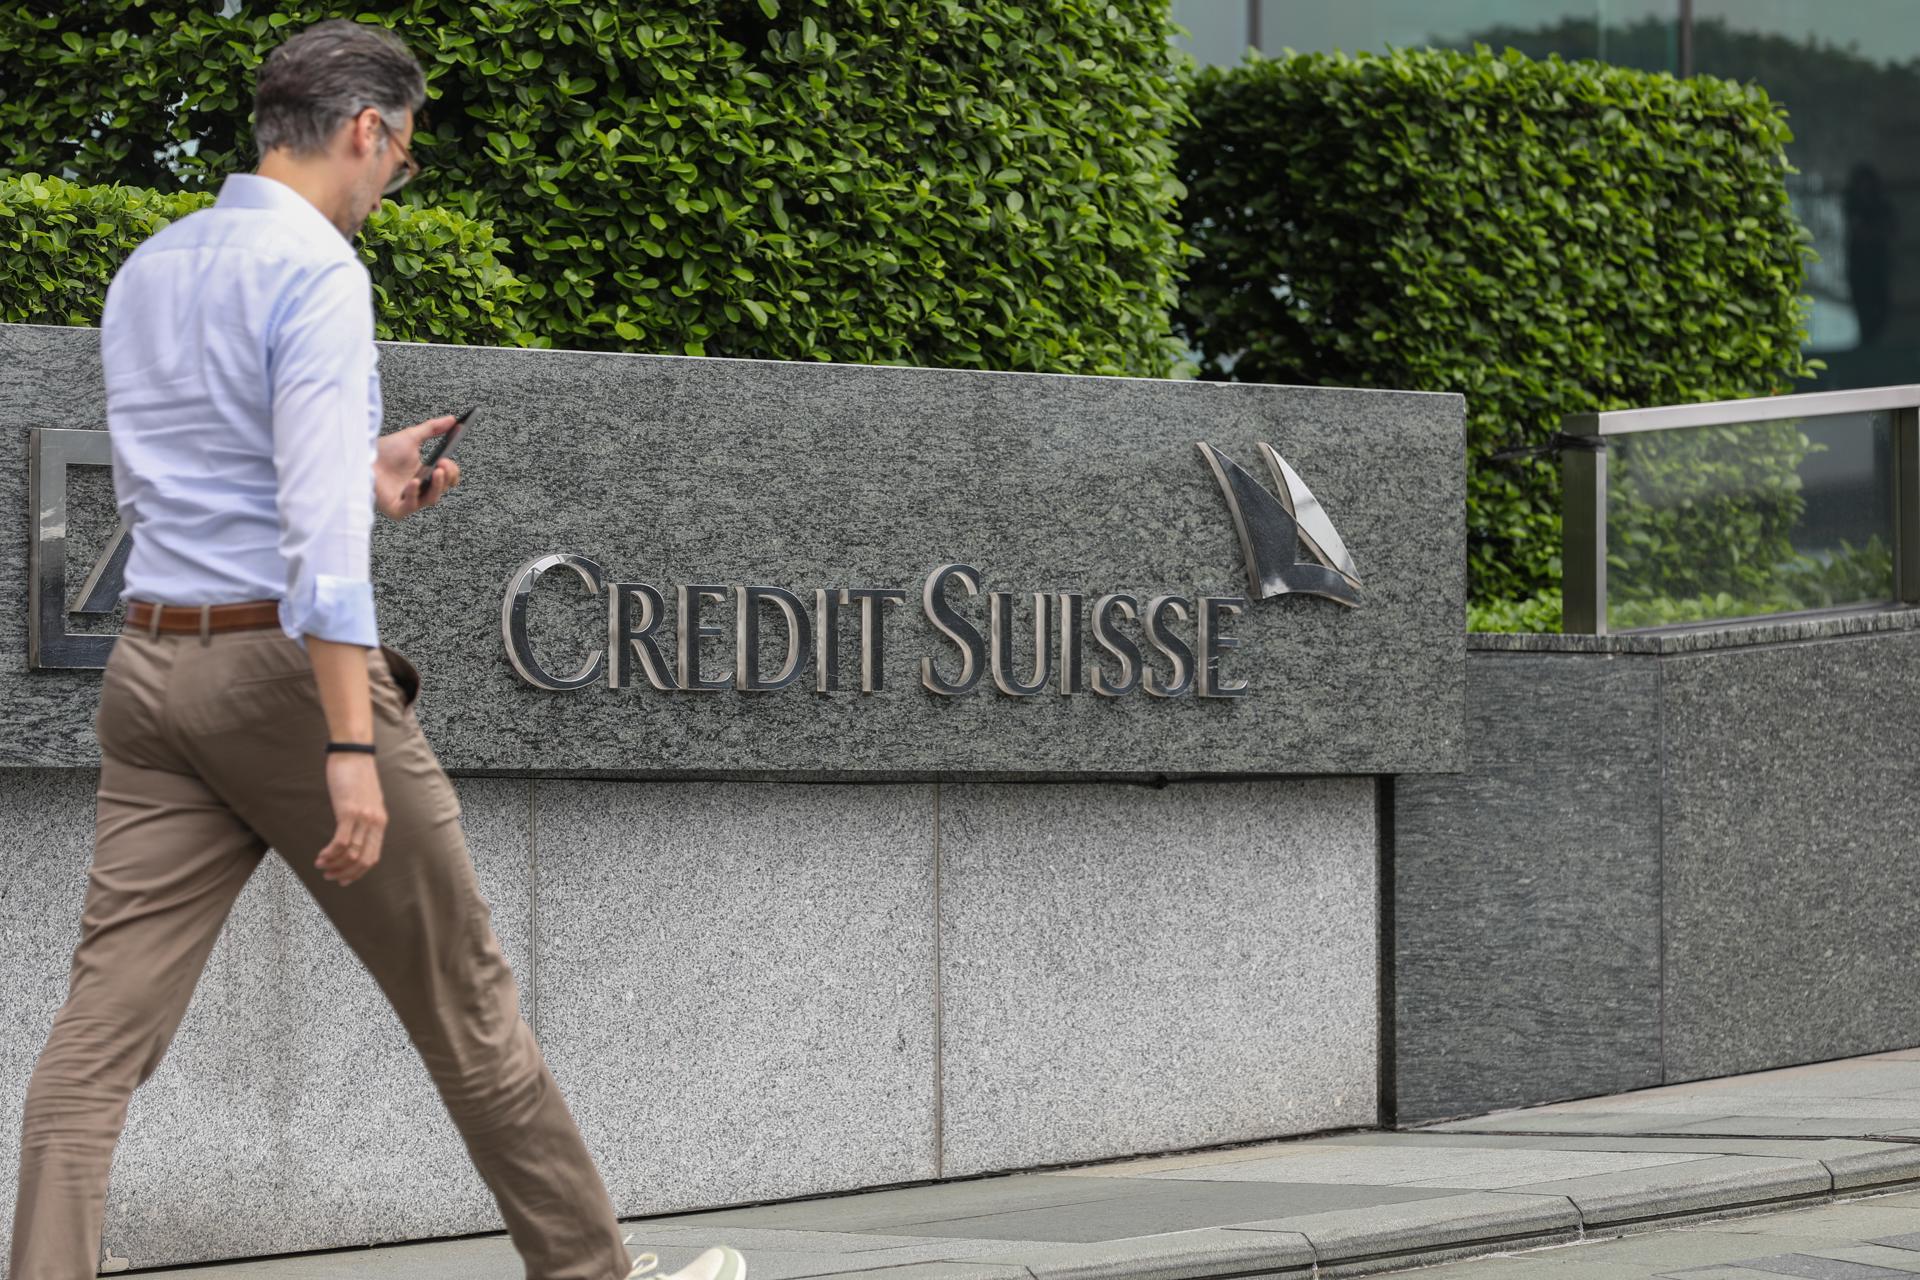 La Fed da luz verde a la compra de las filiales de Credit Suisse en EE.UU. por UBS